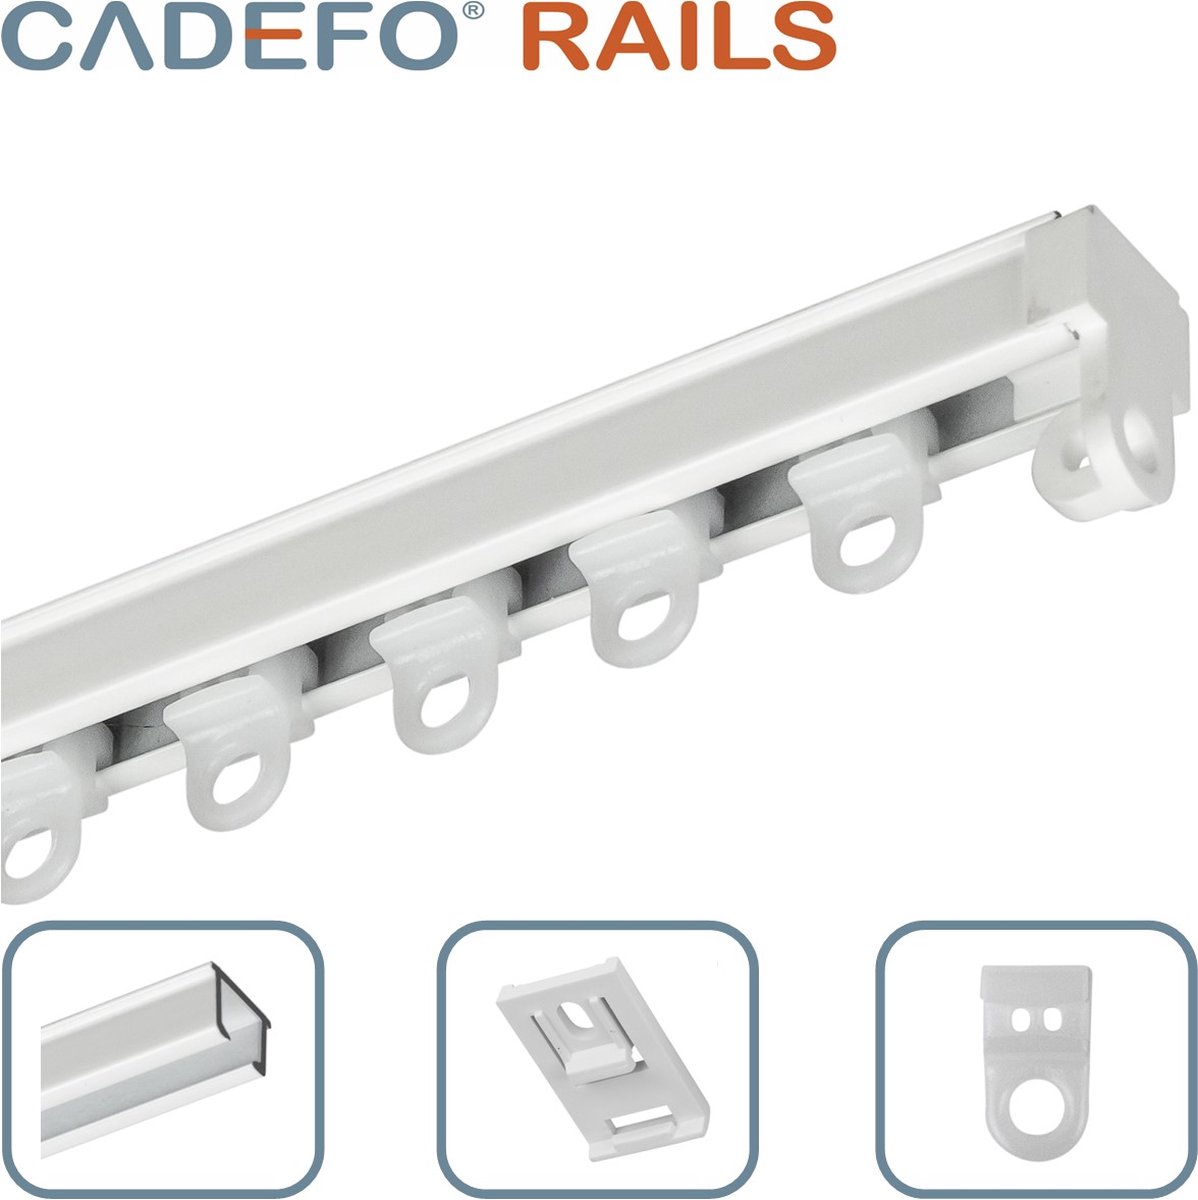 CADEFO RAILS (551 - 600 cm) Gordijnrails - Compleet op maat! - UIT 1 STUK - Leverbaar tot 6 meter - Plafondbevestiging - Lengte 575 cm